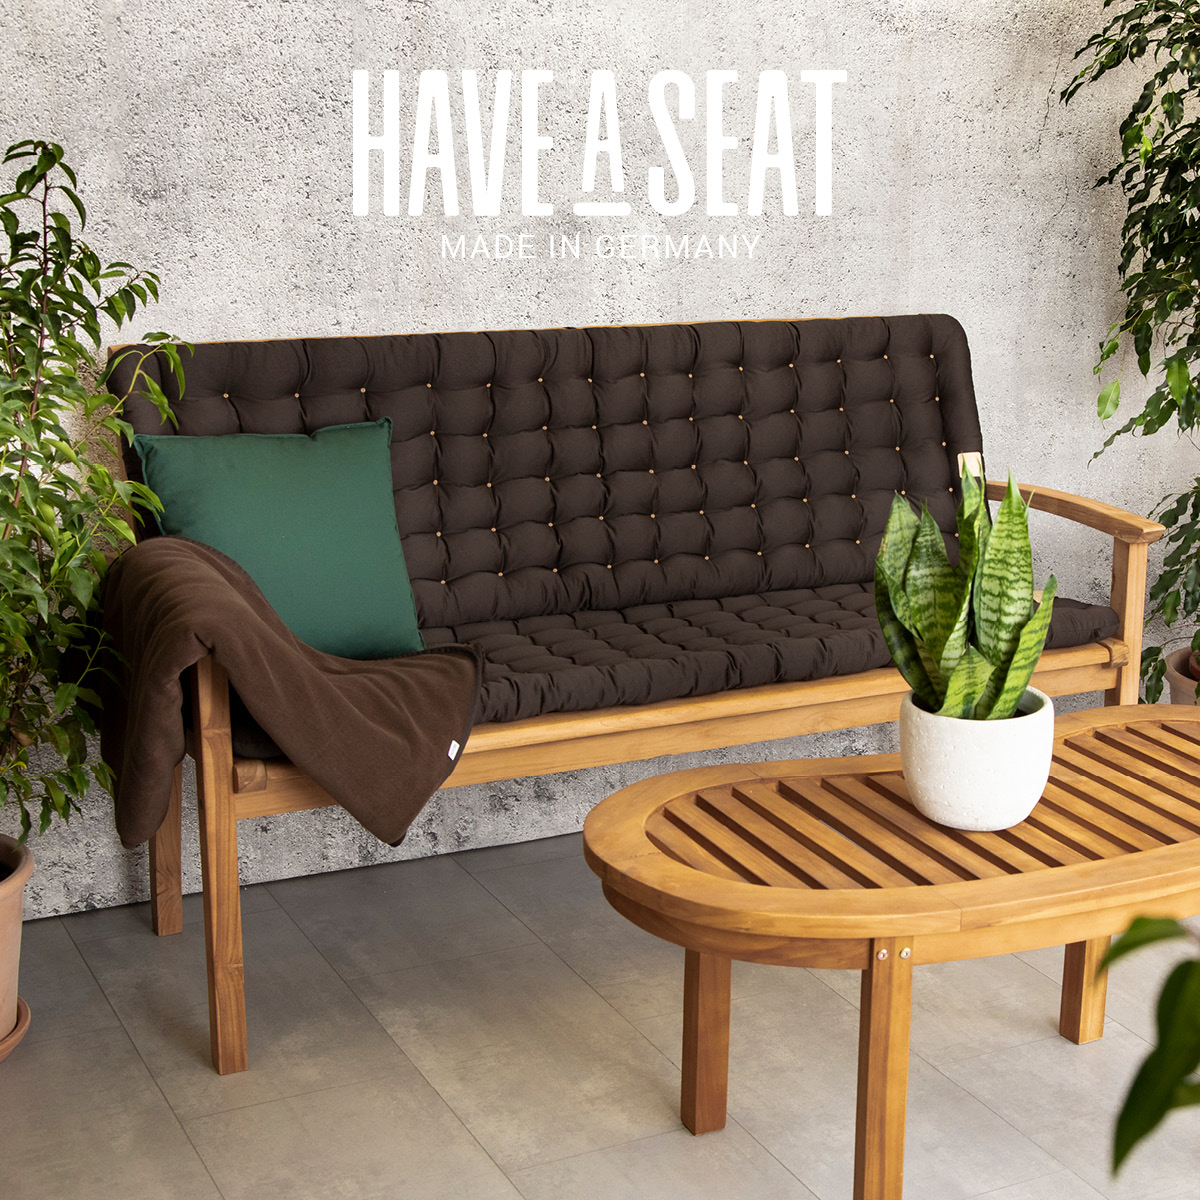 HAVE A SEAT Living, Sitz-/Rückenpolster braun, auf Gartenbank mit Relaxkissen in gemütlicher Terrassen-Athmosphäre | Anwendungsbeispiel